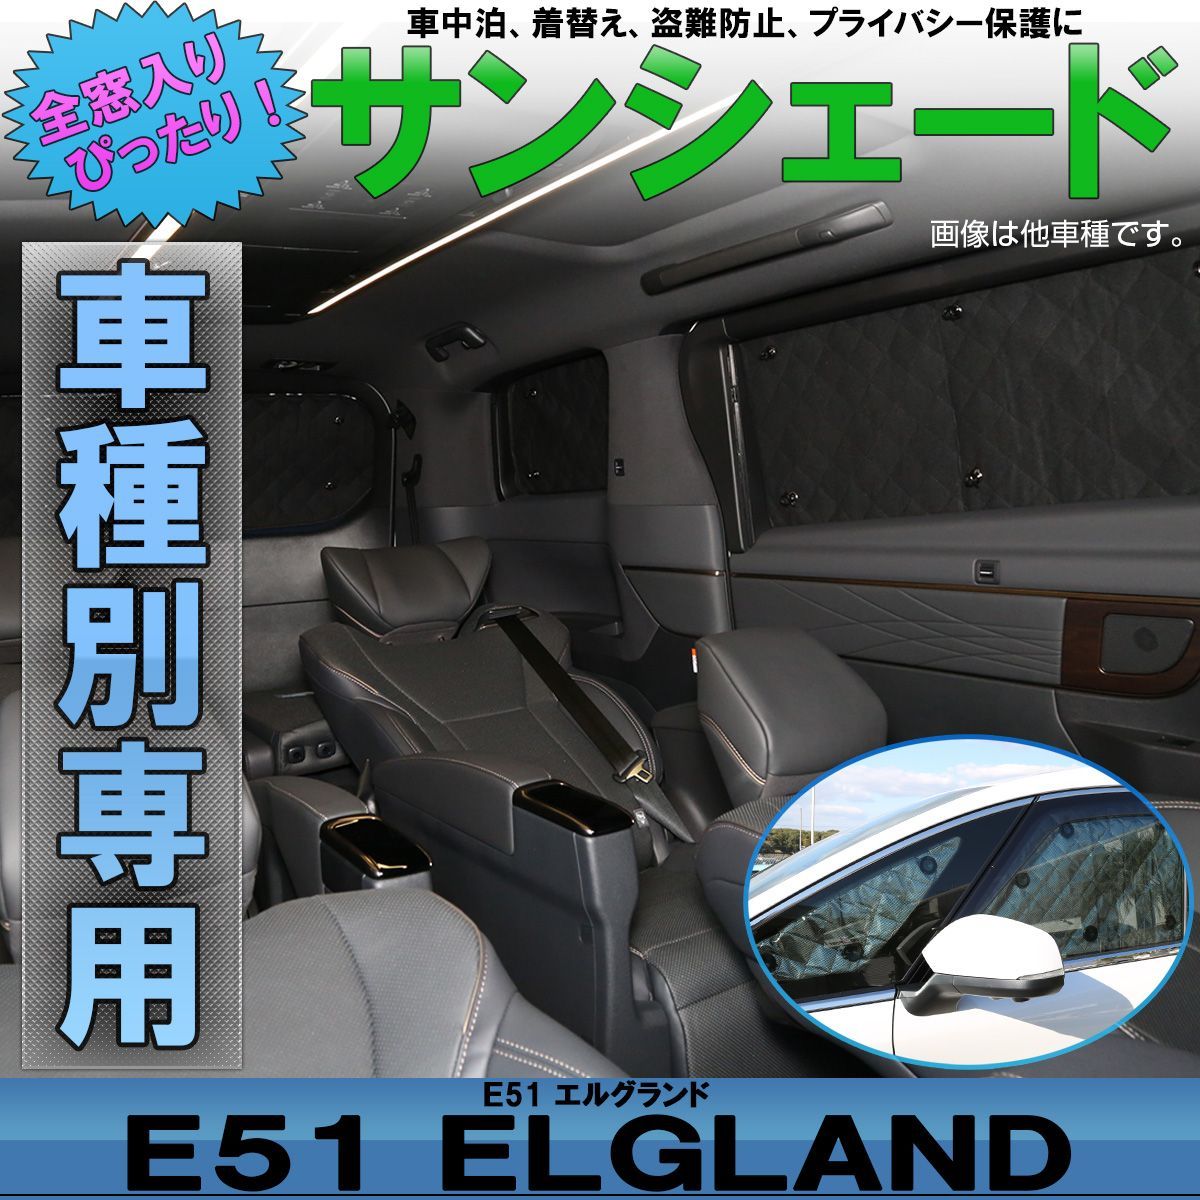 E51 エルグランド 専用設計 全窓用 サンシェード - メルカリ